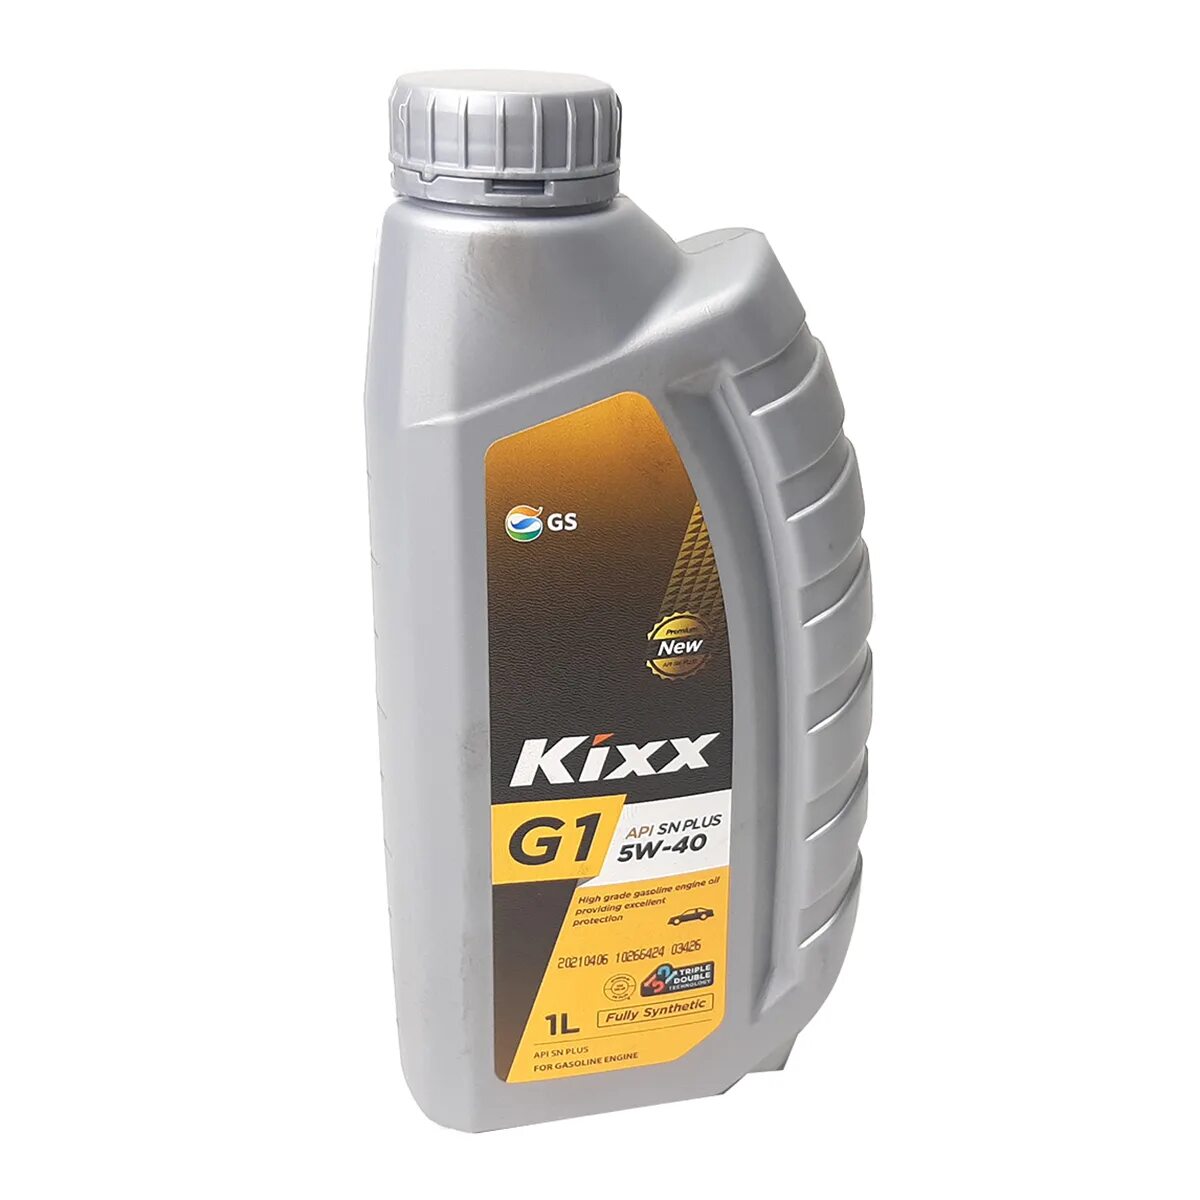 Kixx l2508al1e1. Kixx 5w40 синтетика. Kixx g1 5w-40. Kixx g1 SP 5w-40. Масло 0w40 5w40